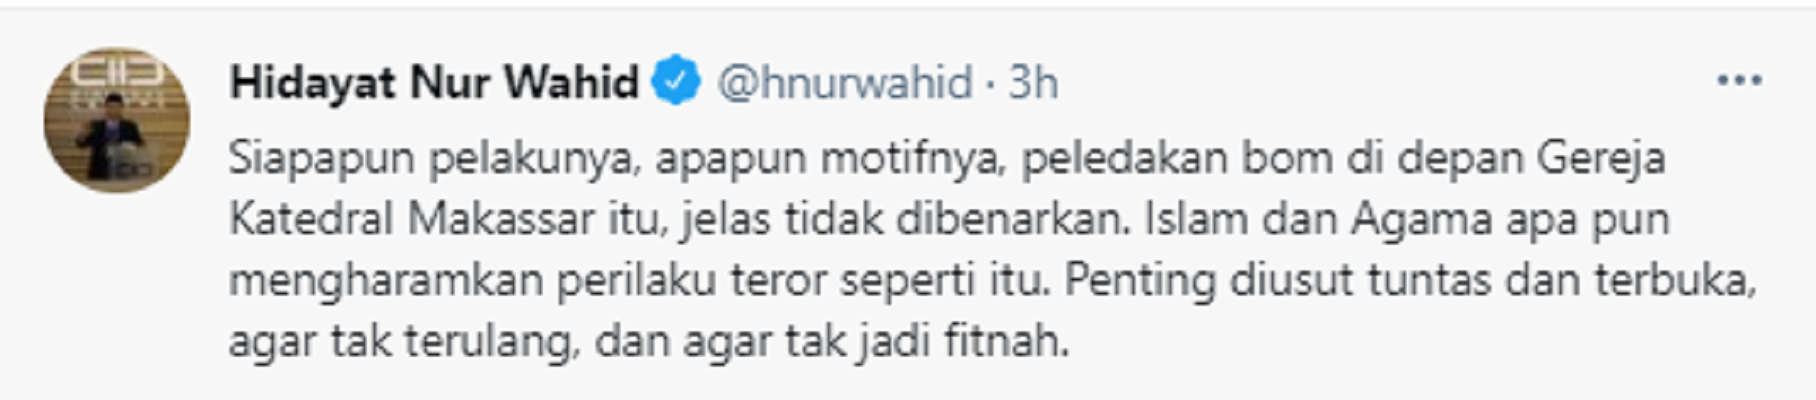 Cuitan Hidayat Nur Wahid soal bom bunuh diri di Gereja Katedral Makassar, Sulawesi Selatan, Minggu 28 Maret 2021.